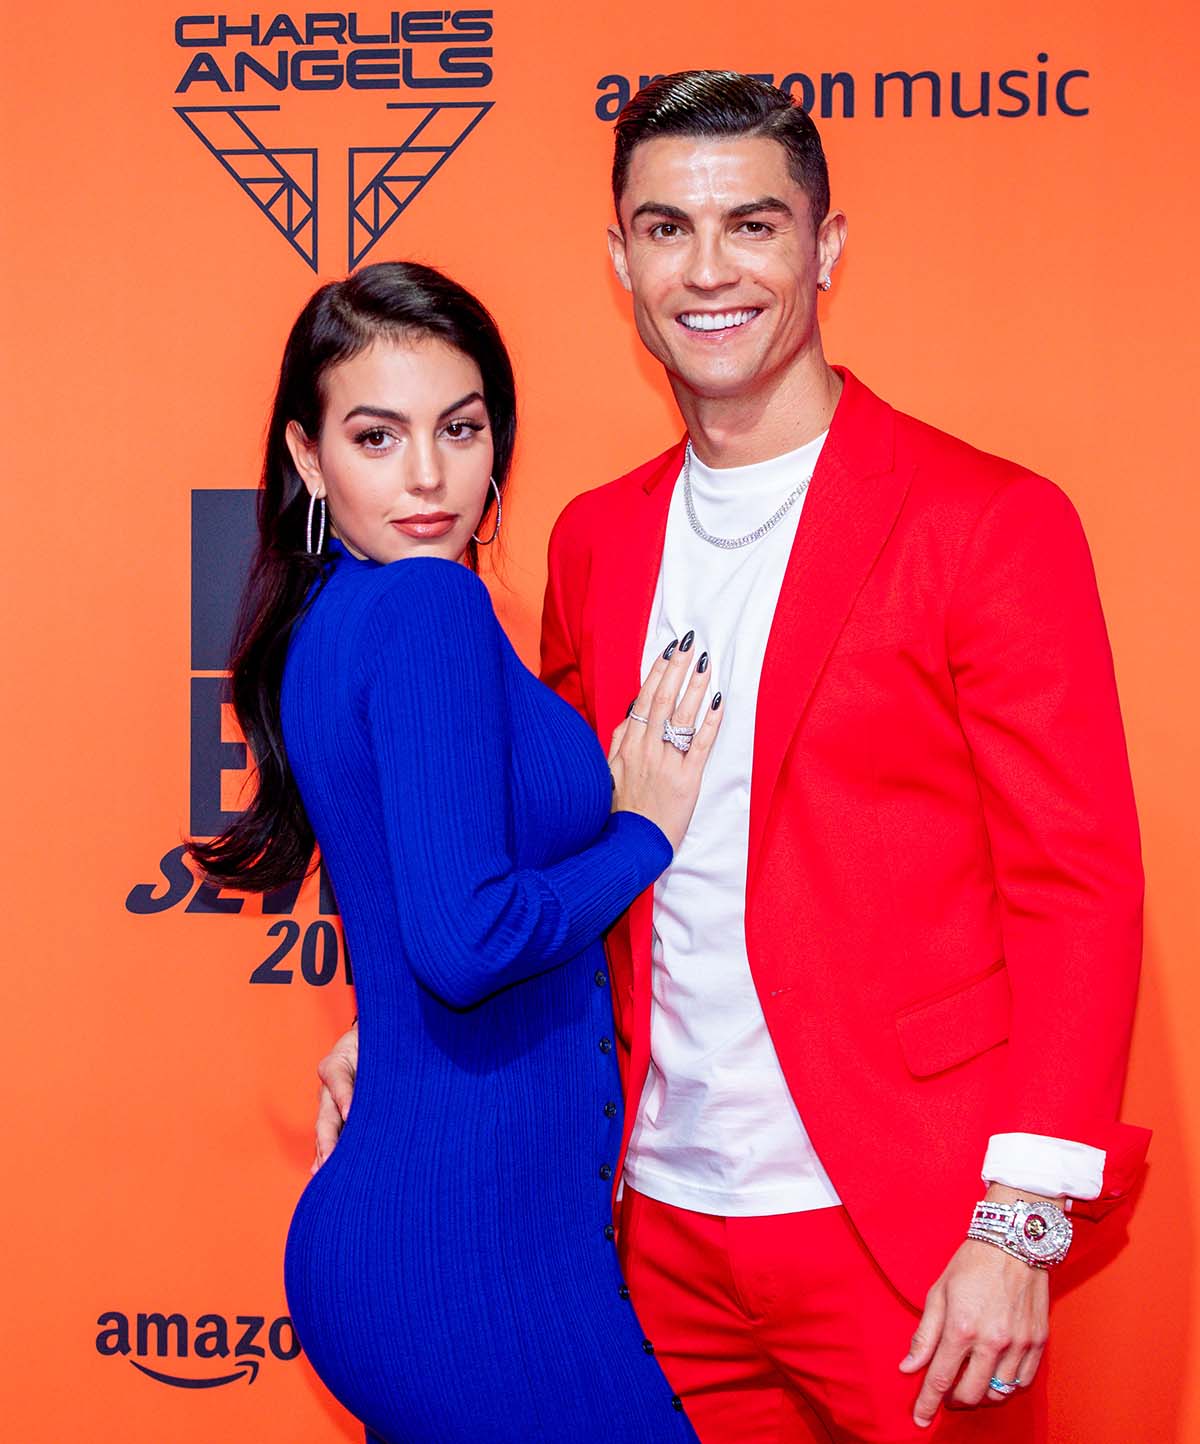 Cristiano-Ronaldo-Georgina-Rodriguezs-Relationship-Timeline-0001576.jpg